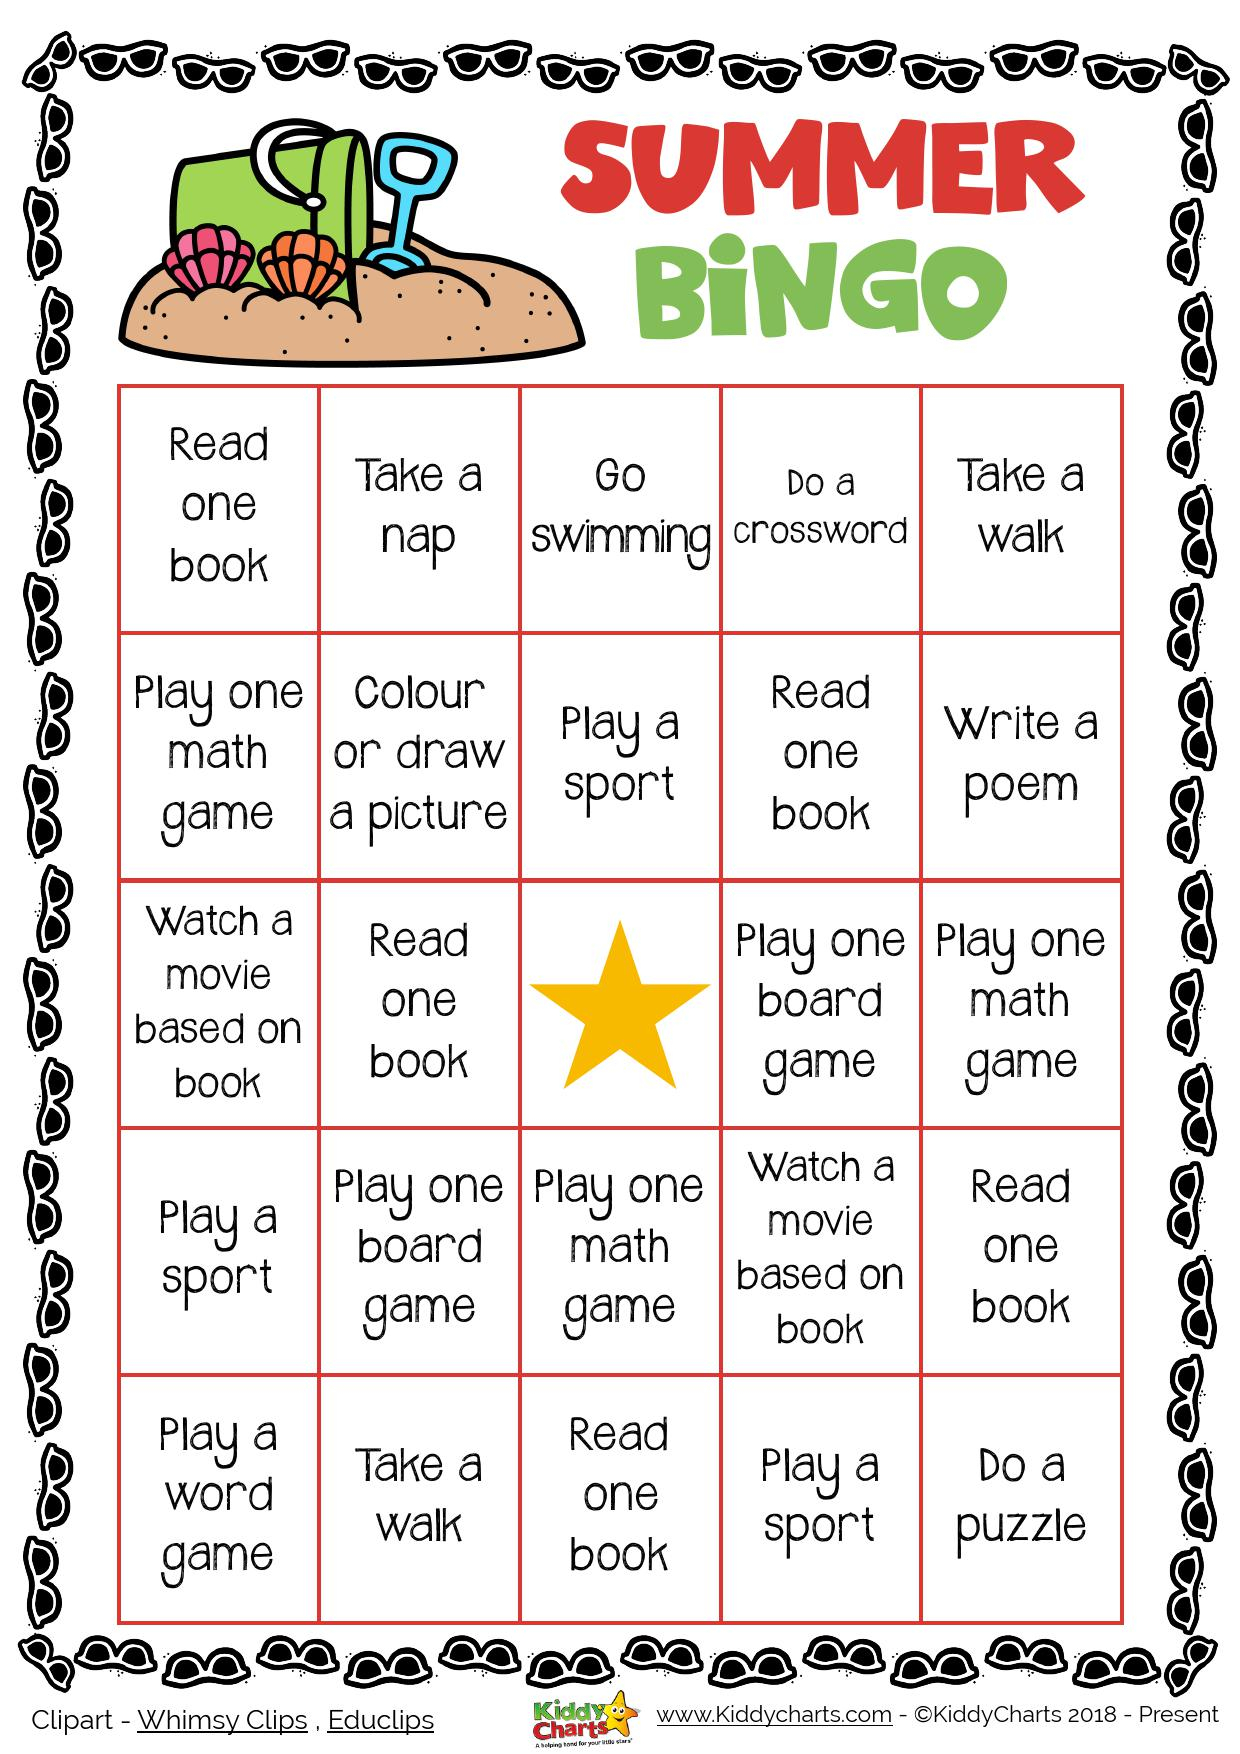 Day 1 Summer Bingo Printable Game KiddyChartsSummer